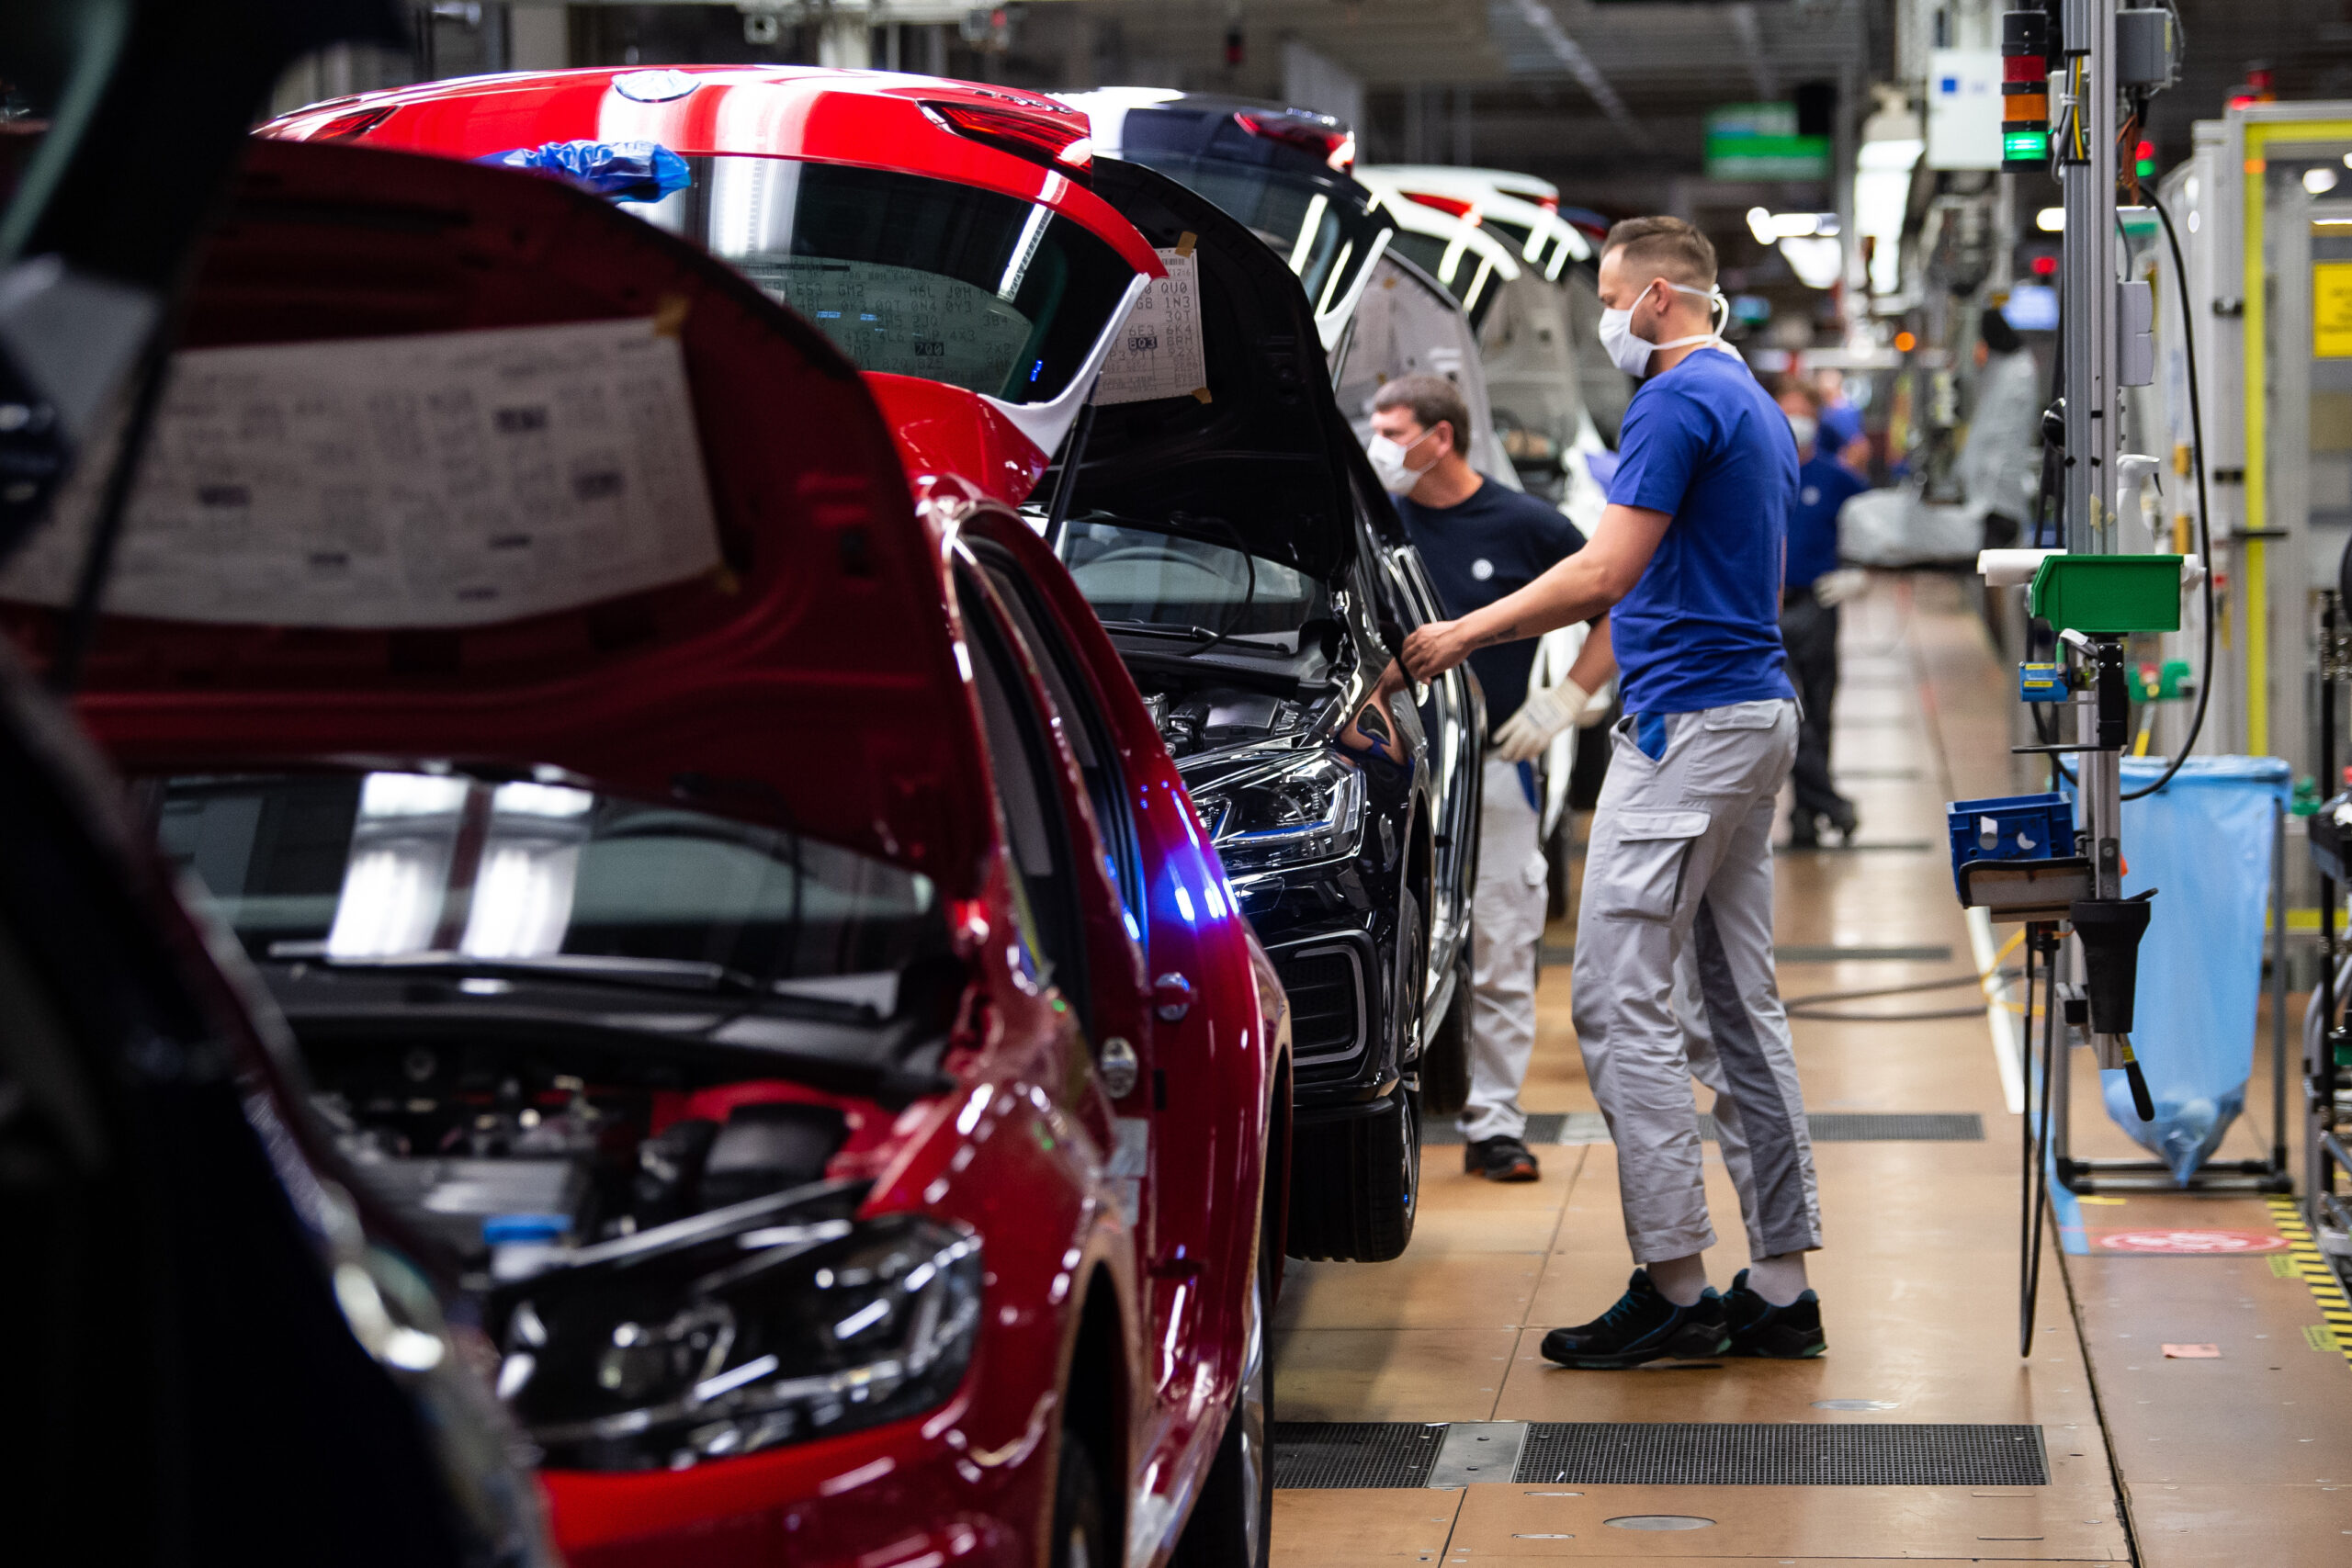 VW-Angestellte arbeiten in der Produktion in Wolfsburg an einem Fahrzeug. (Symbolbild)